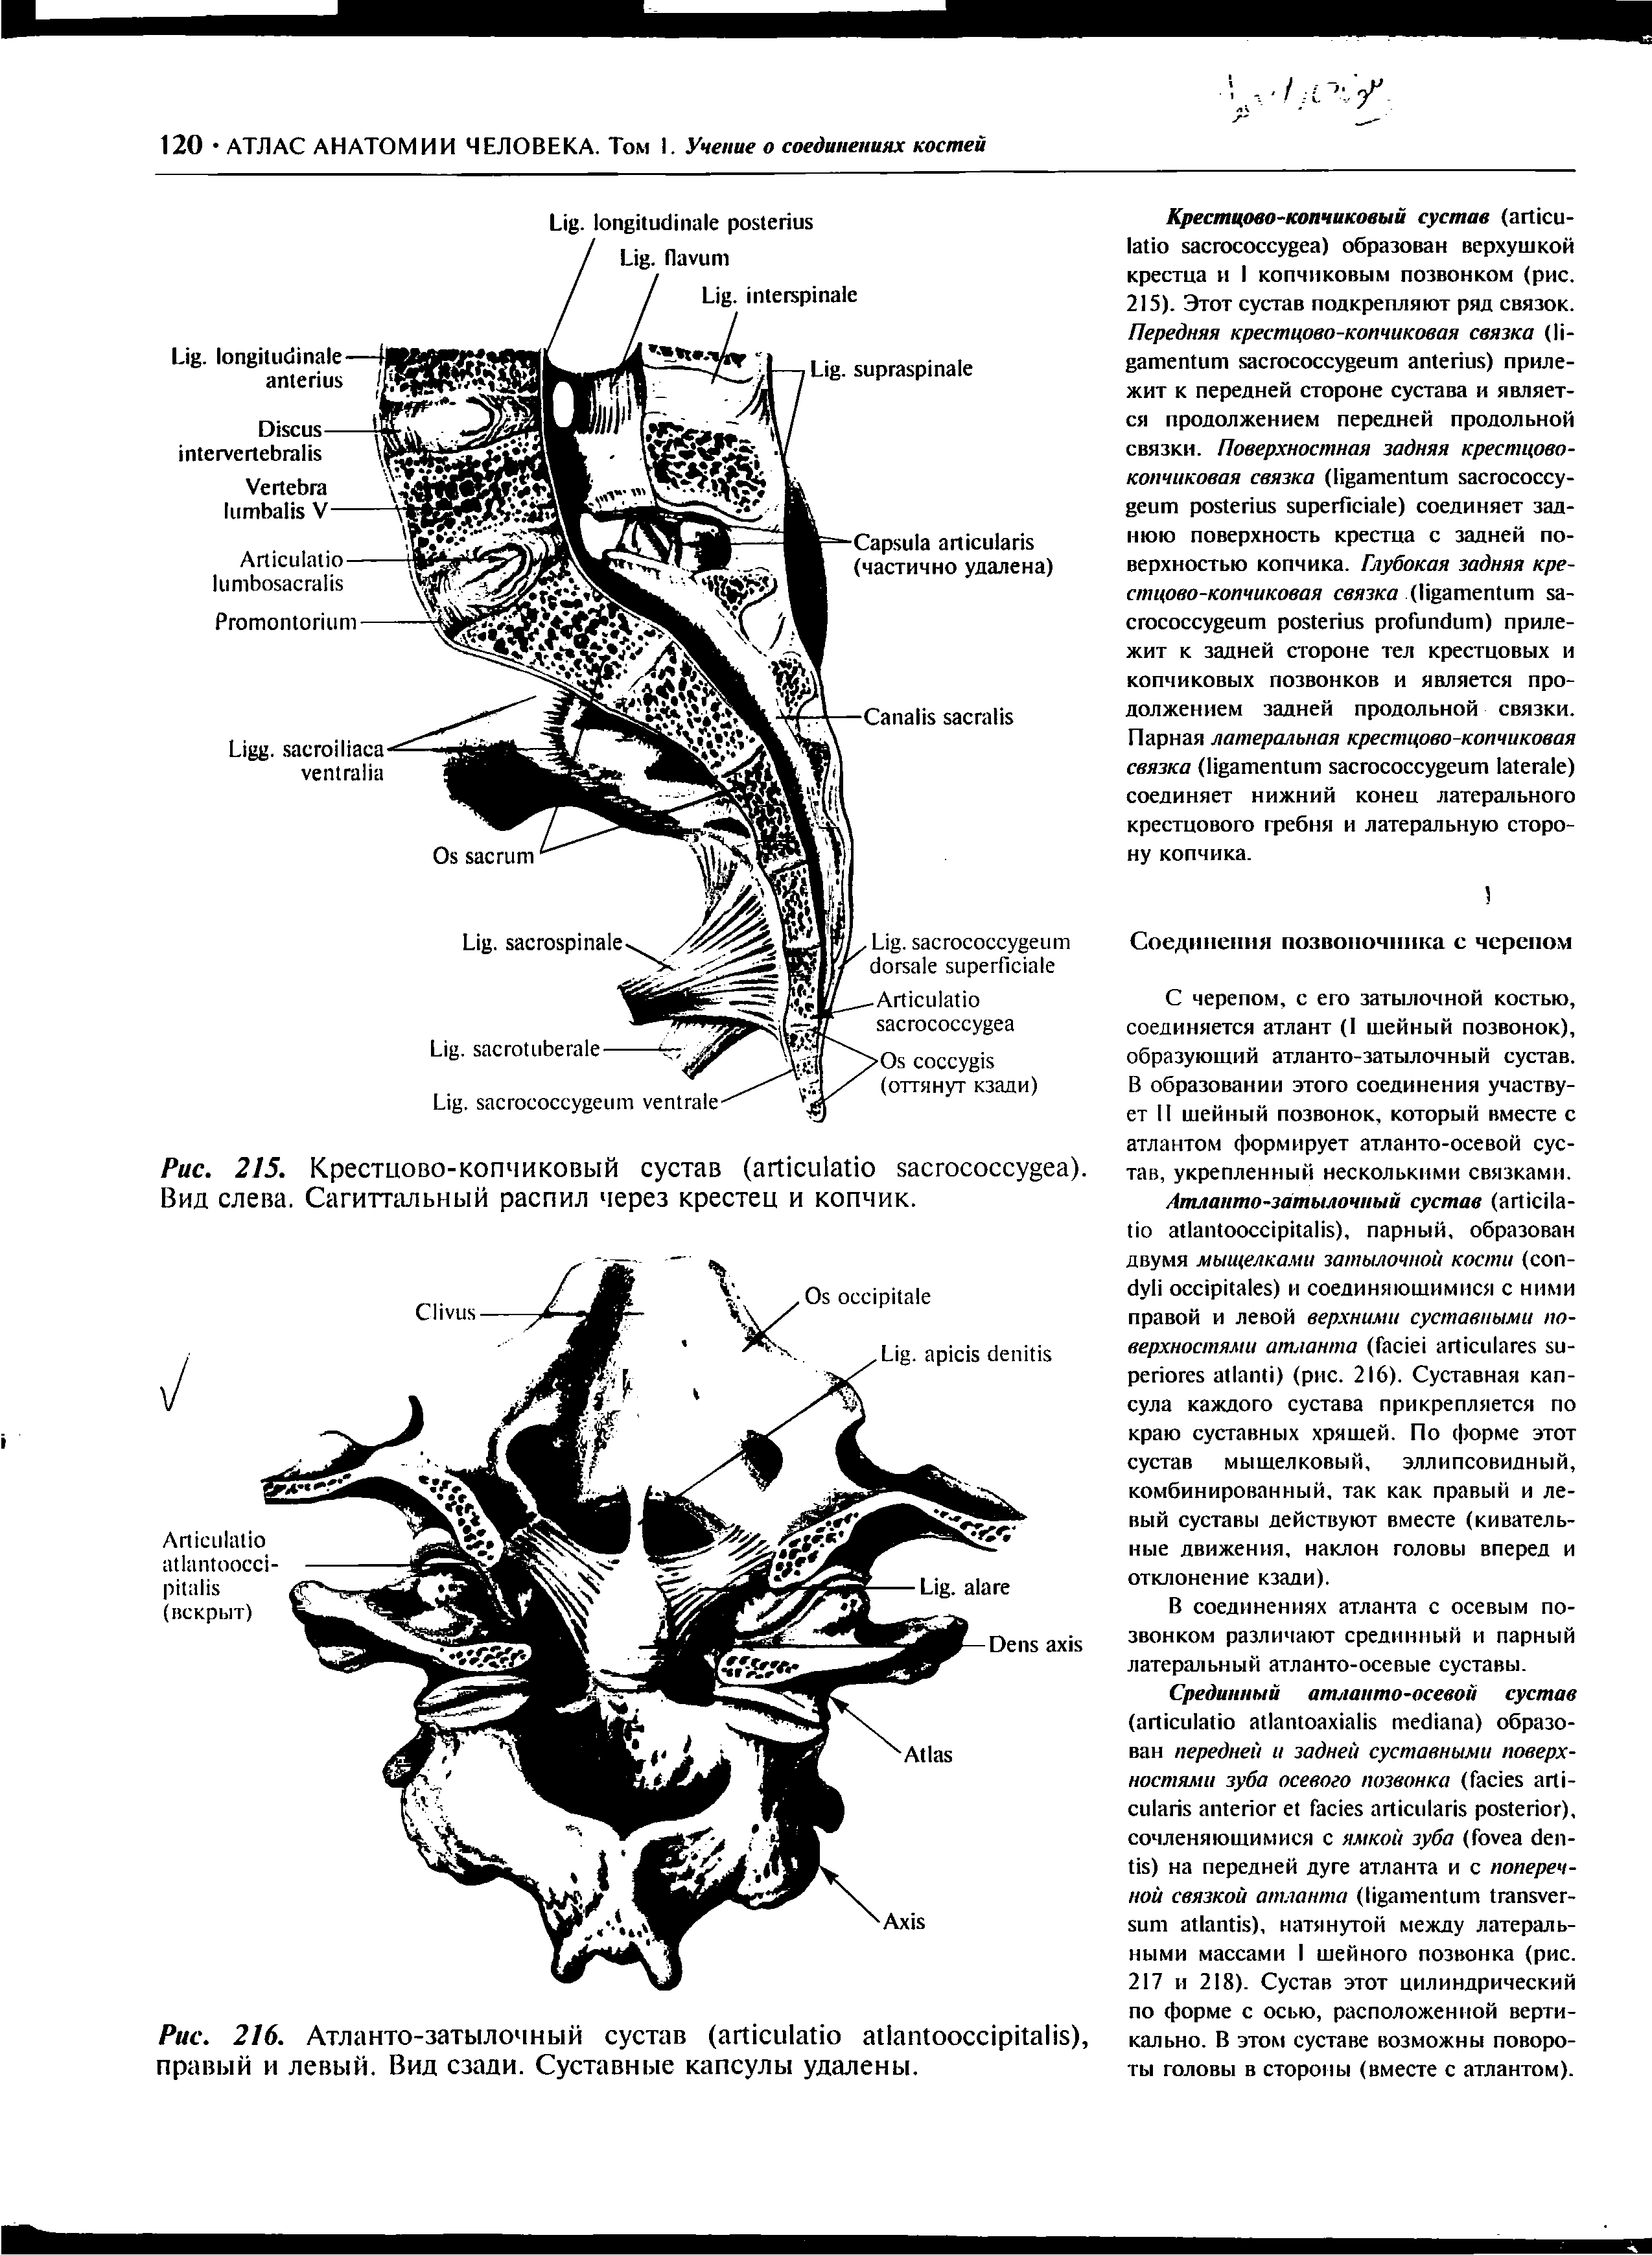 Рис. 216. Атланто-затылочный сустав (агОсЫайо аВатоосарйаЙБ), правый и левый. Вид сзади. Суставные капсулы удалены.